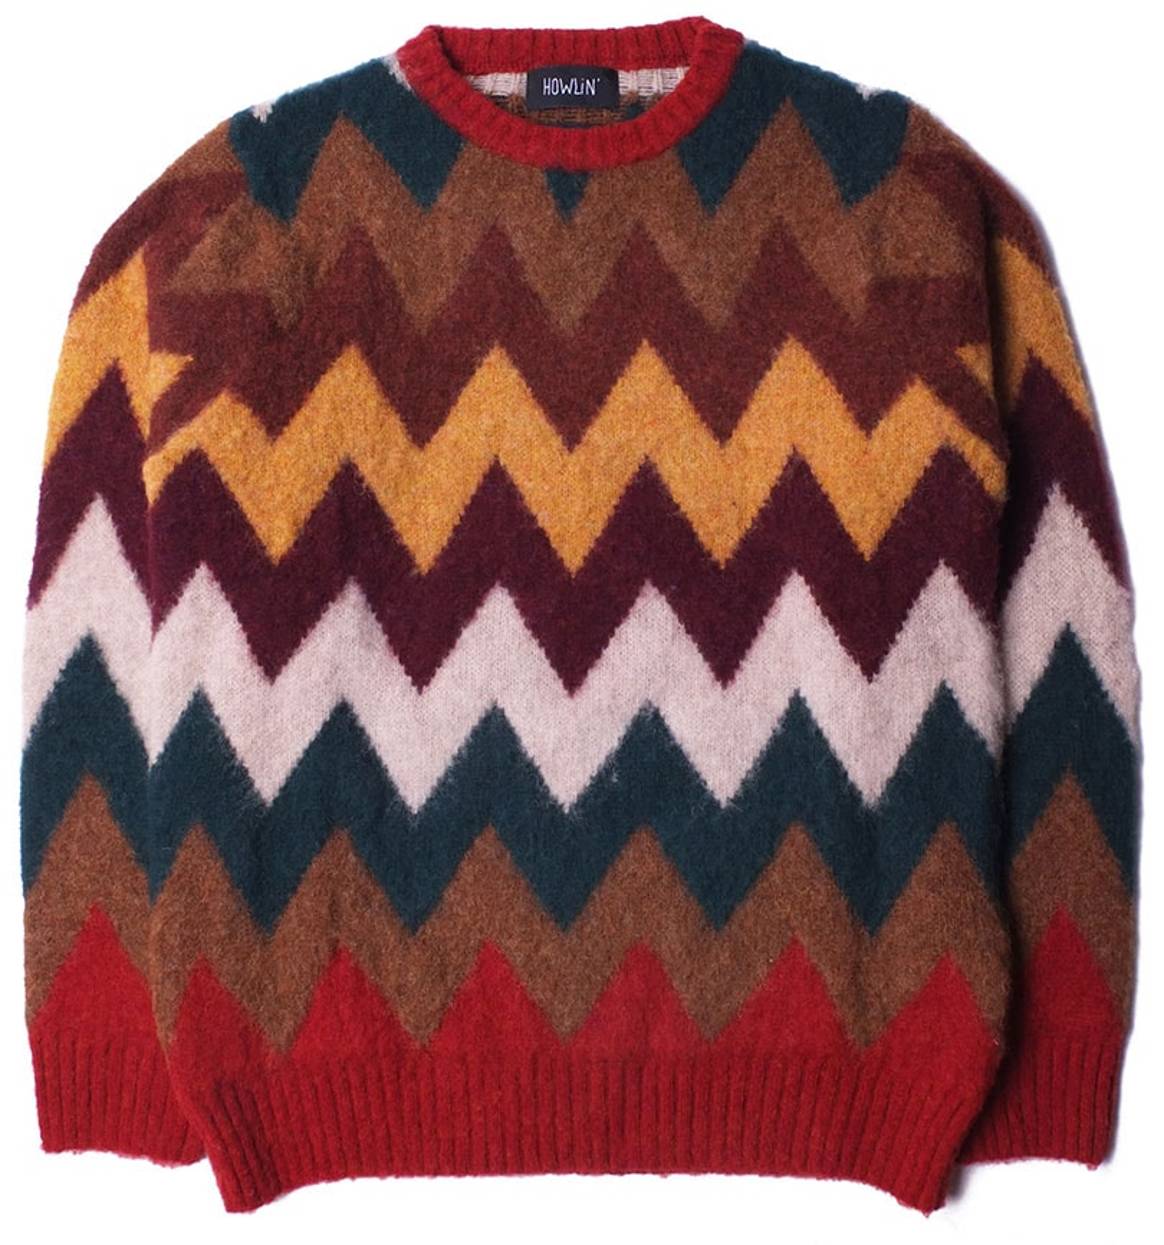 Howlin’ viert 10 jaar Belgisch breigoed met iconische zigzagcapsule als ode aan Luke Edward Halls favoriete sweater